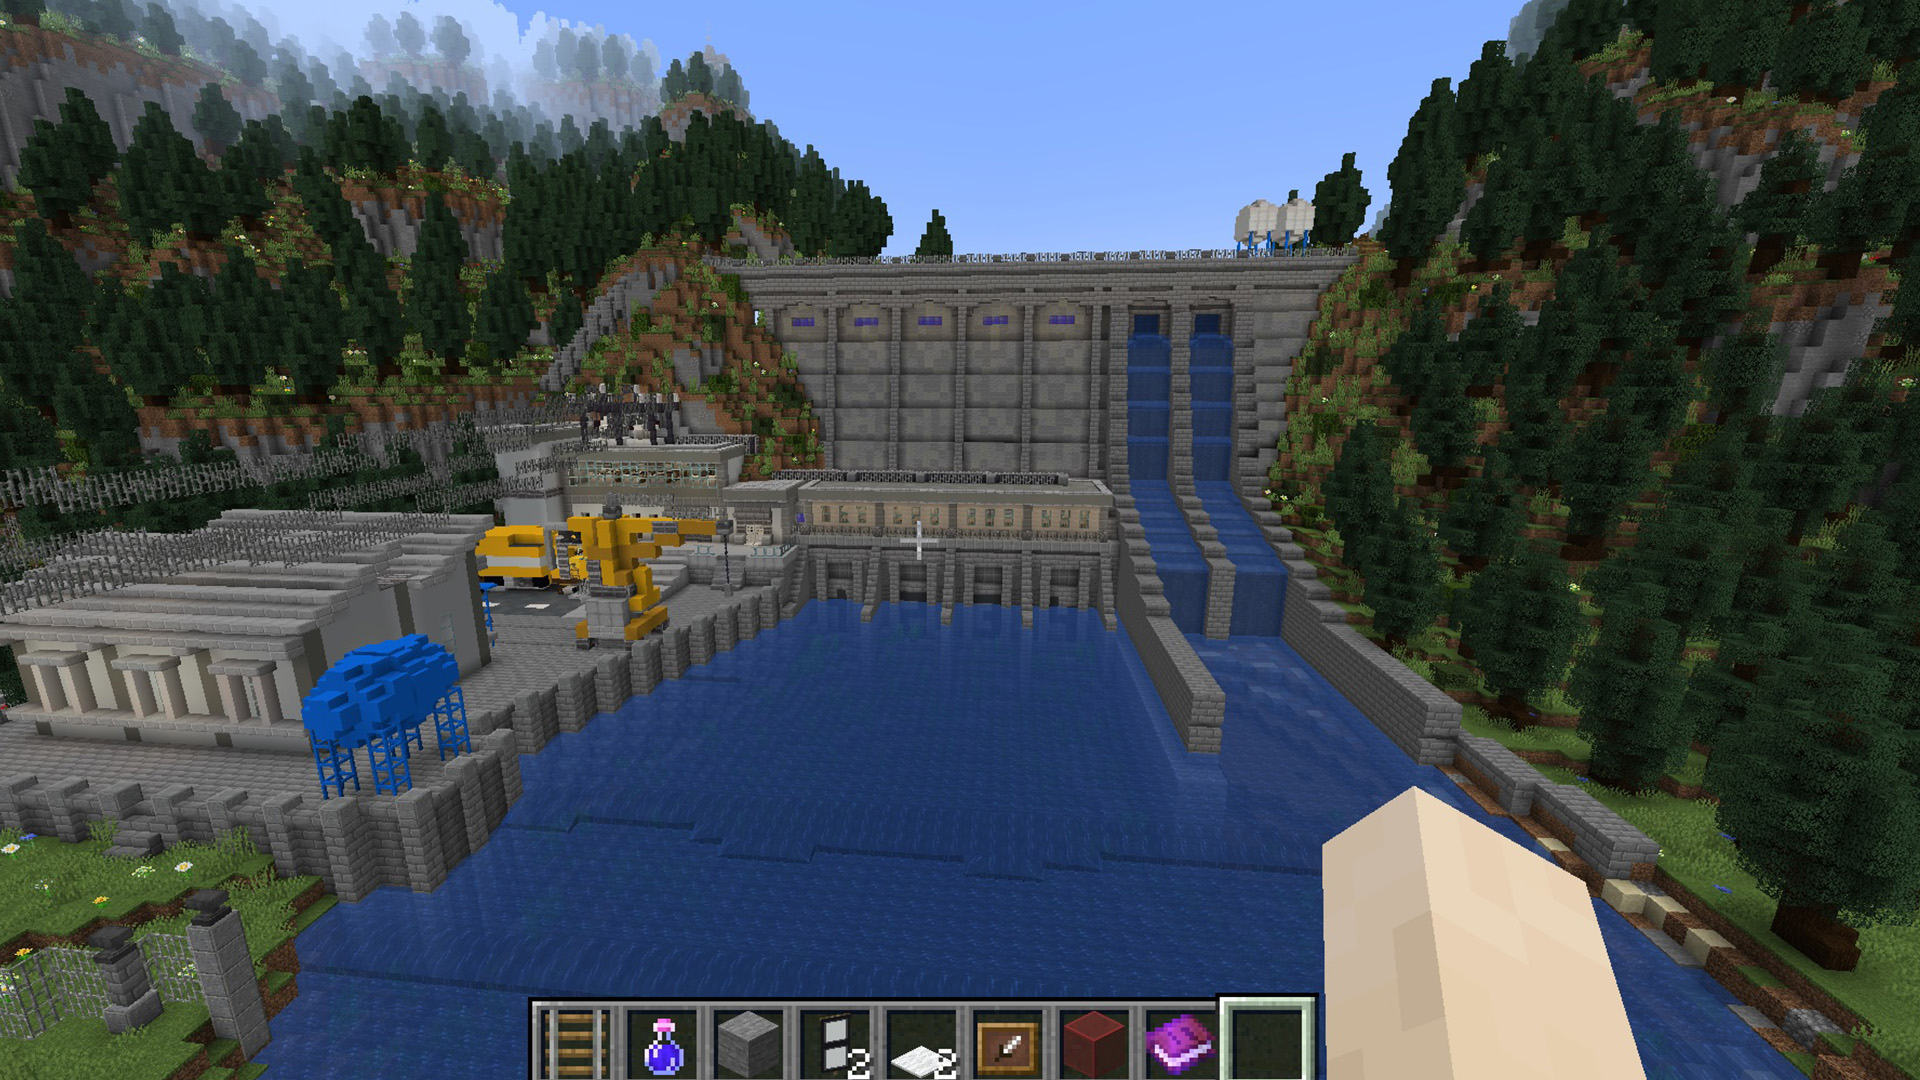 V Minecrafte postavili neuveriteľné elektrárne: Spoznajte víťazov súťaže Energocraft